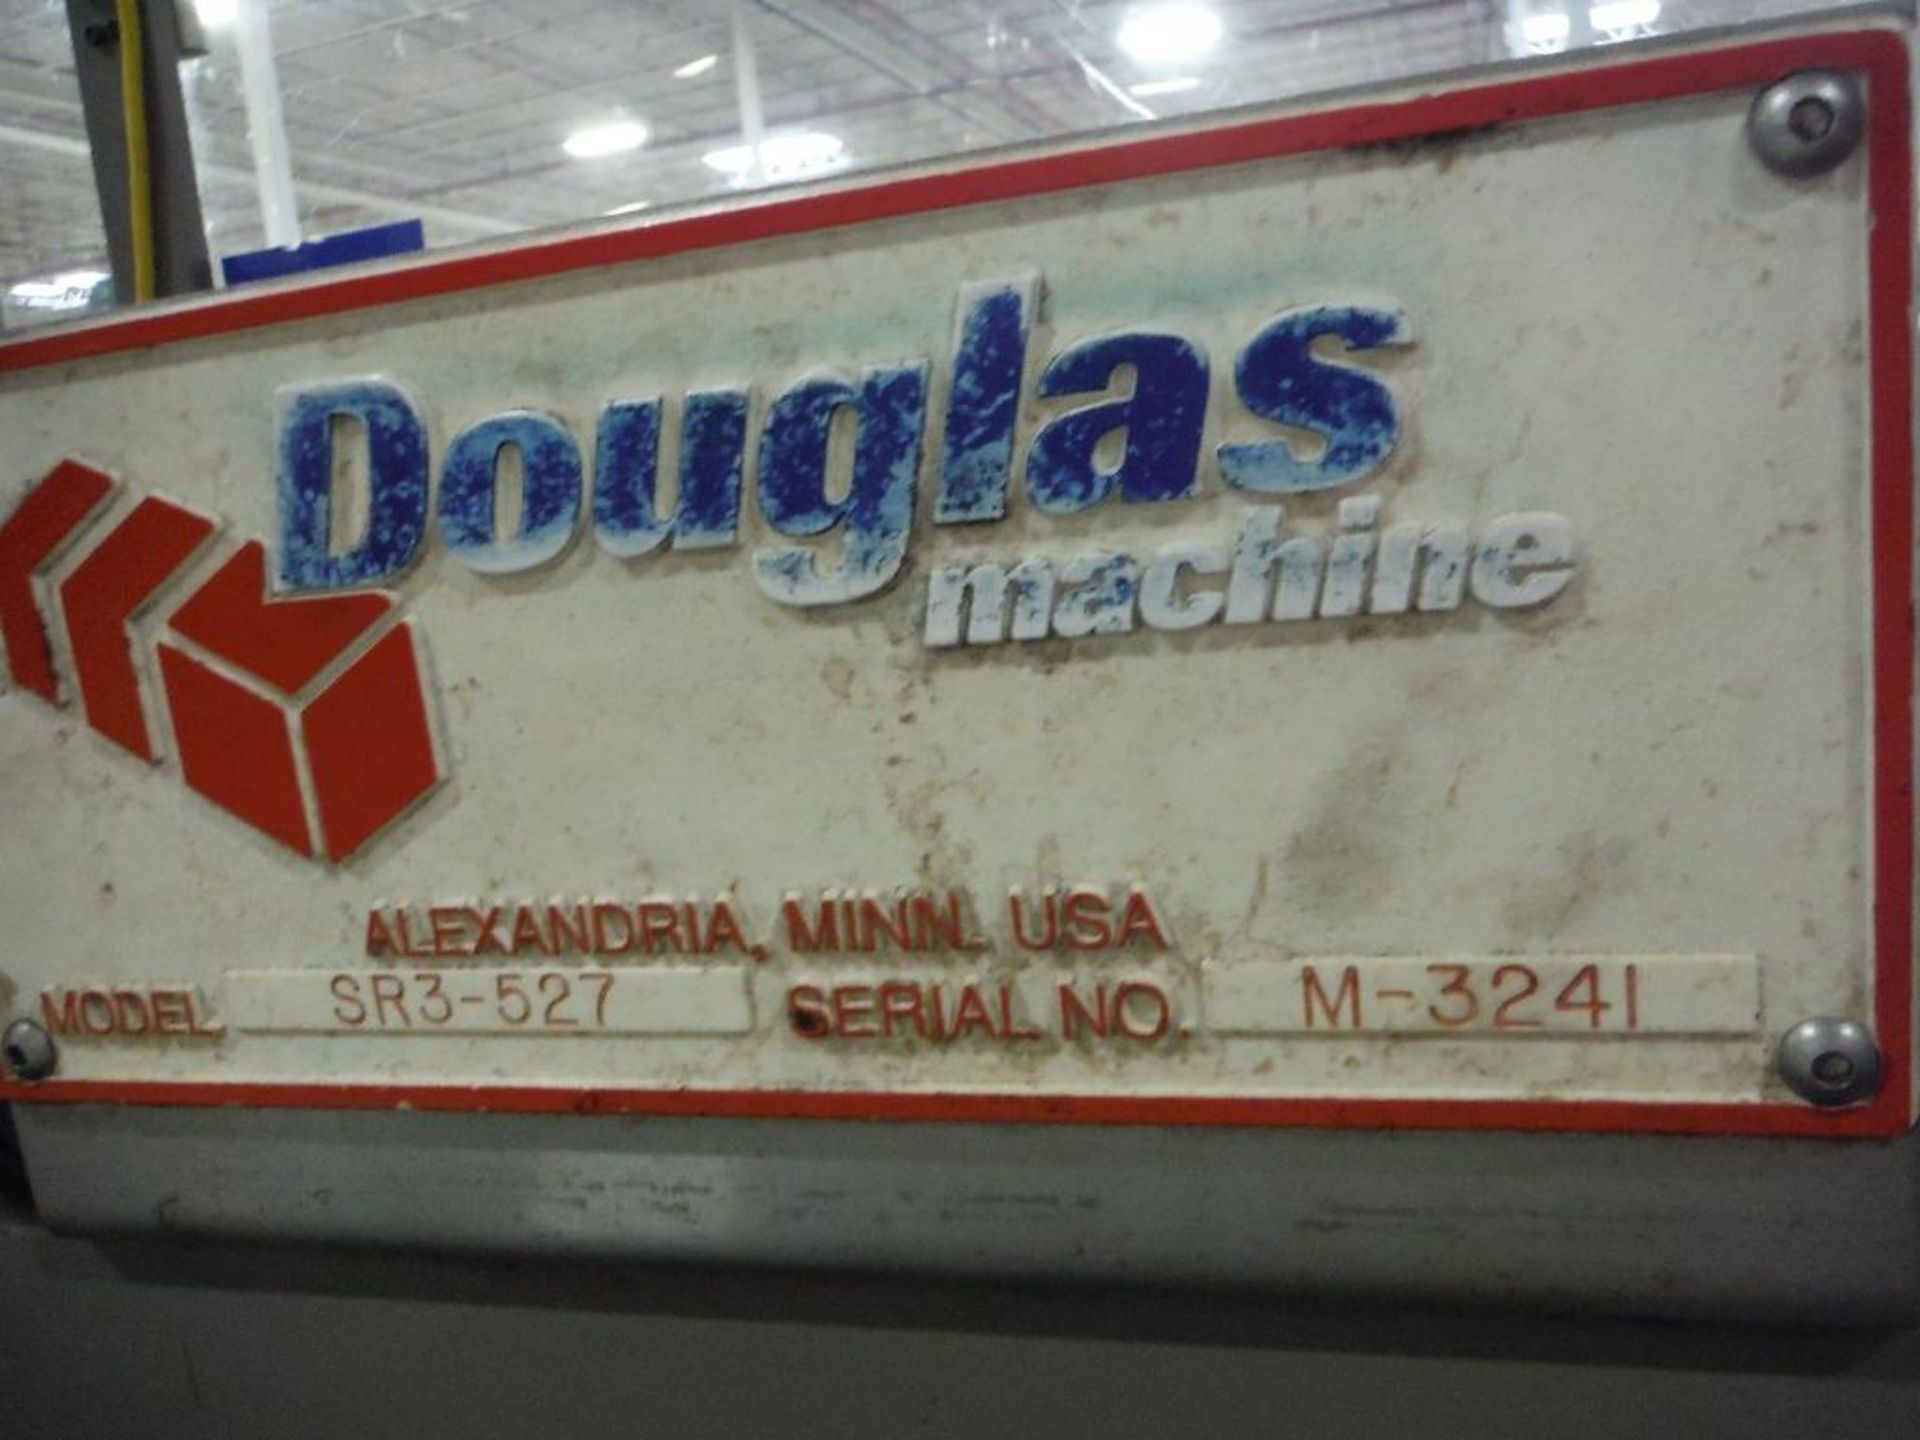 Douglas shrink wrapper, Model SR3-527, SN M-3241, 106 in. long x 30 in. wide belt, 33 in. wide seal - Image 5 of 17